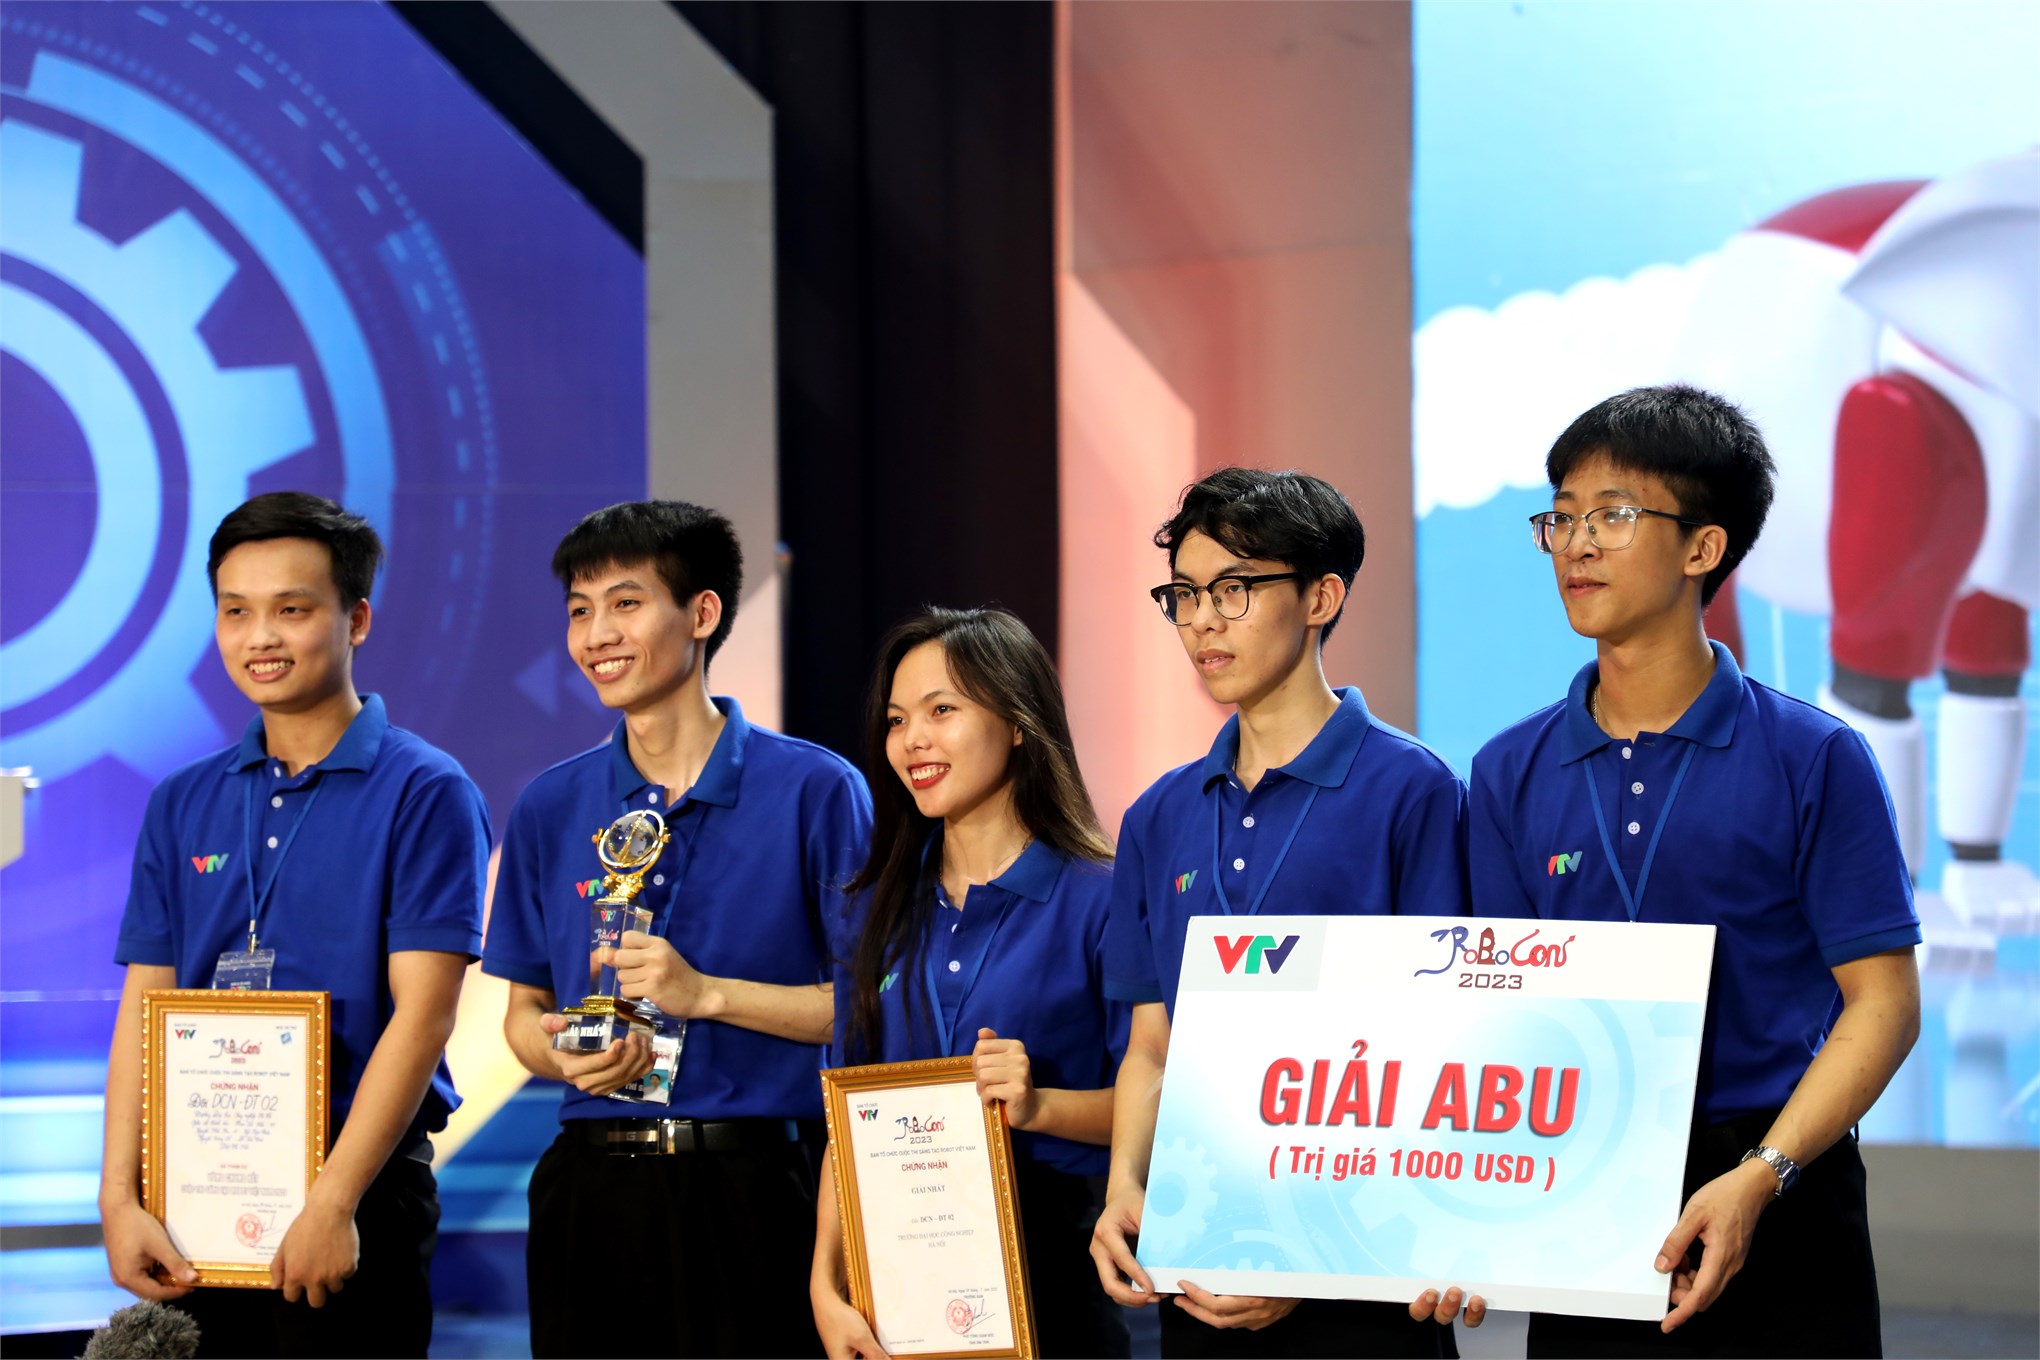 DCN-ĐT 02 Đại học Công nghiệp Hà Nội vô địch Cuộc thi Sáng tạo Robot Việt Nam năm 2023